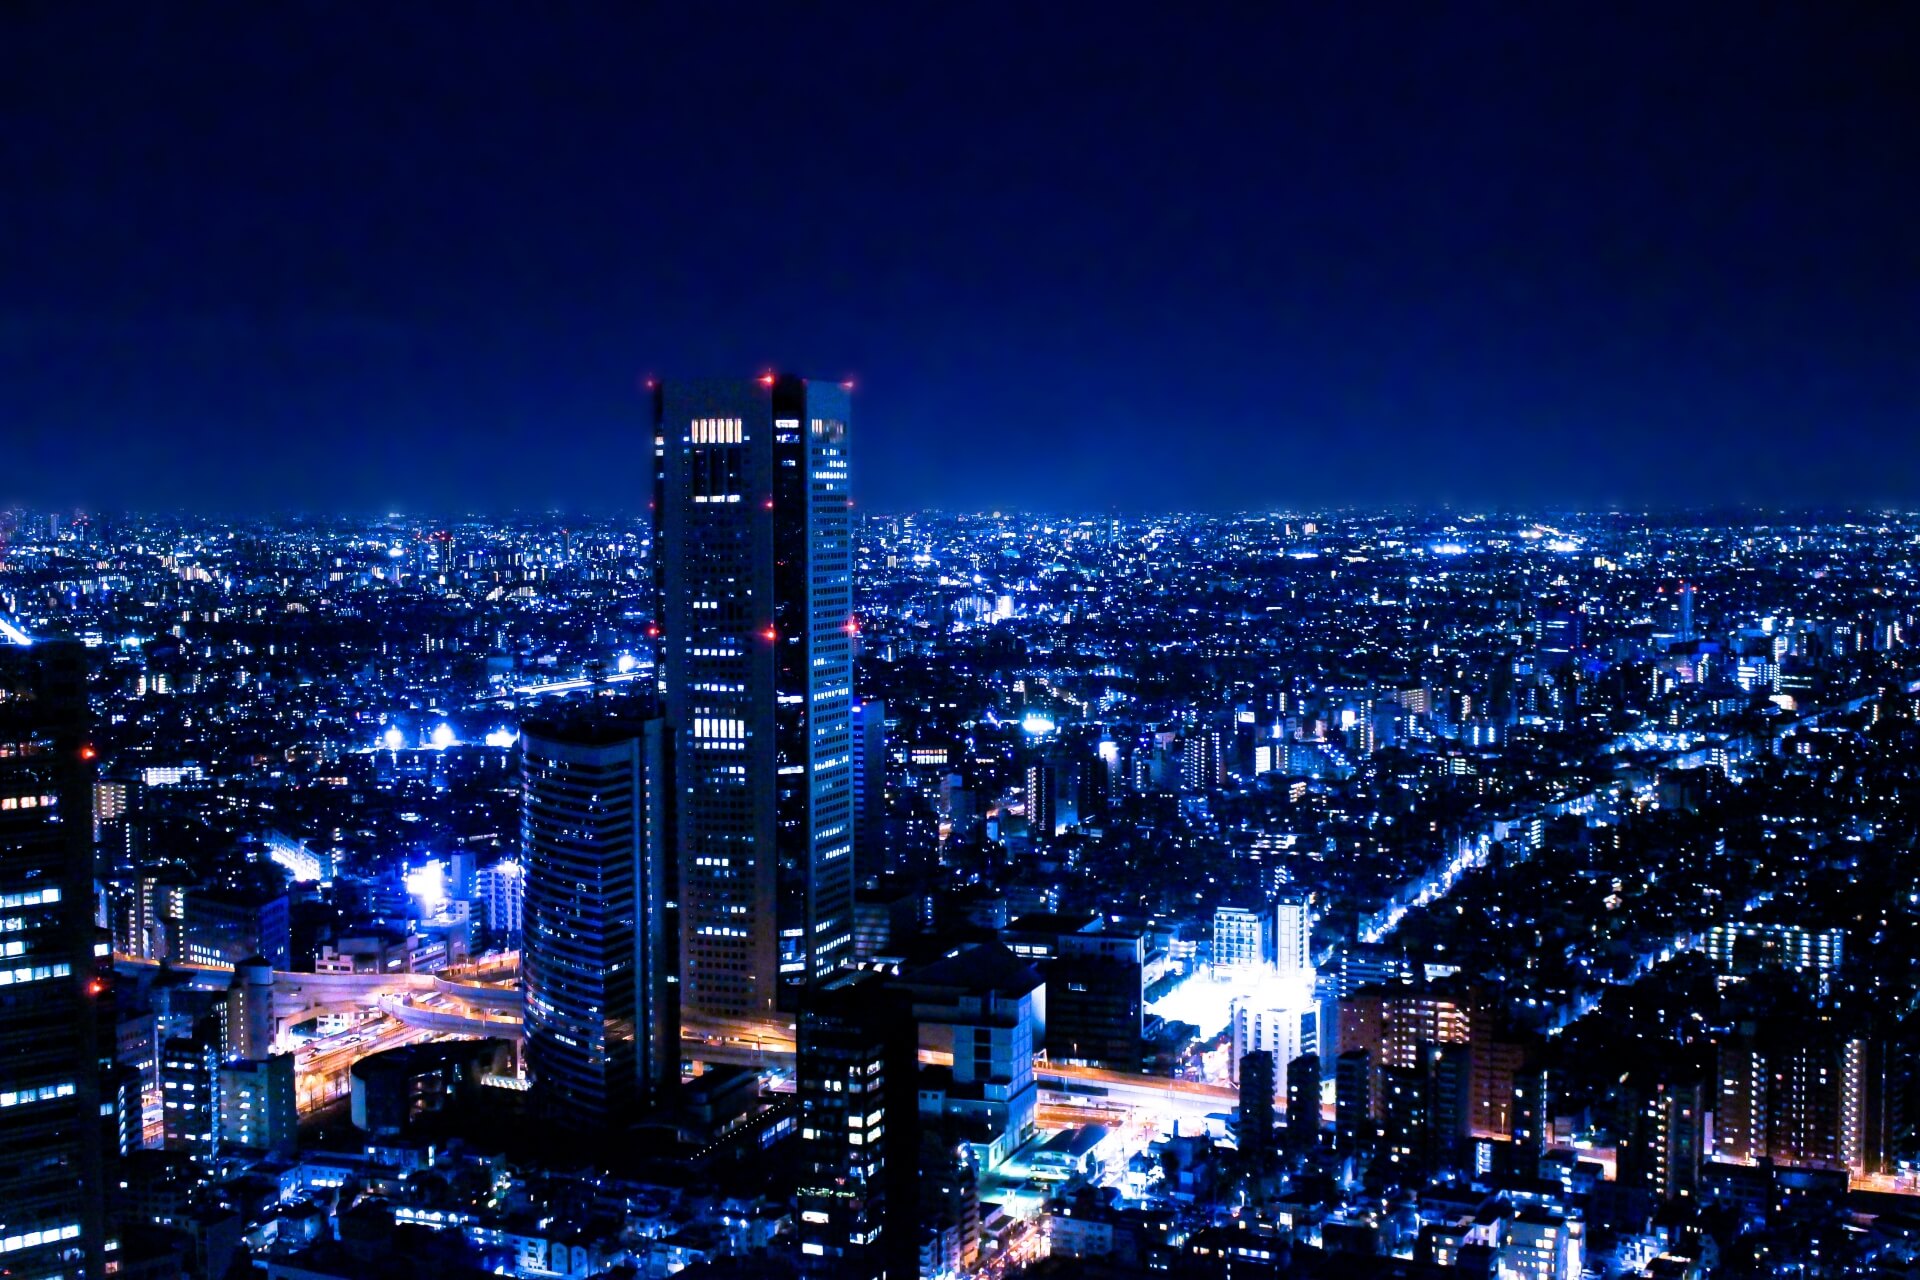 ムード最高 夜景がおすすめ 東京都内のラブホテル ベスト5 ナイトライフjapan